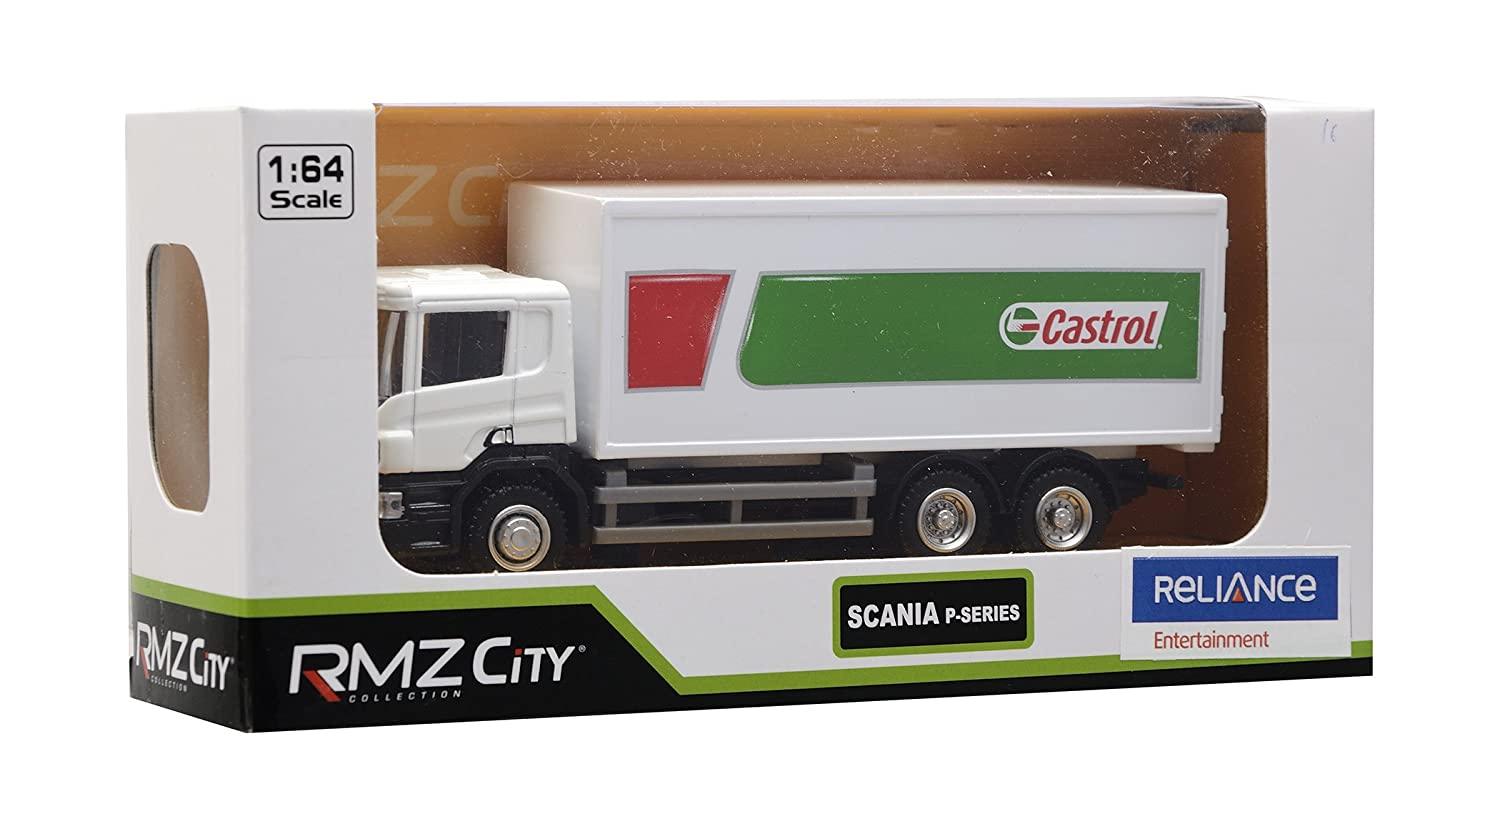 RMZ City Car 1:64 Scania - Castrol Container Truck